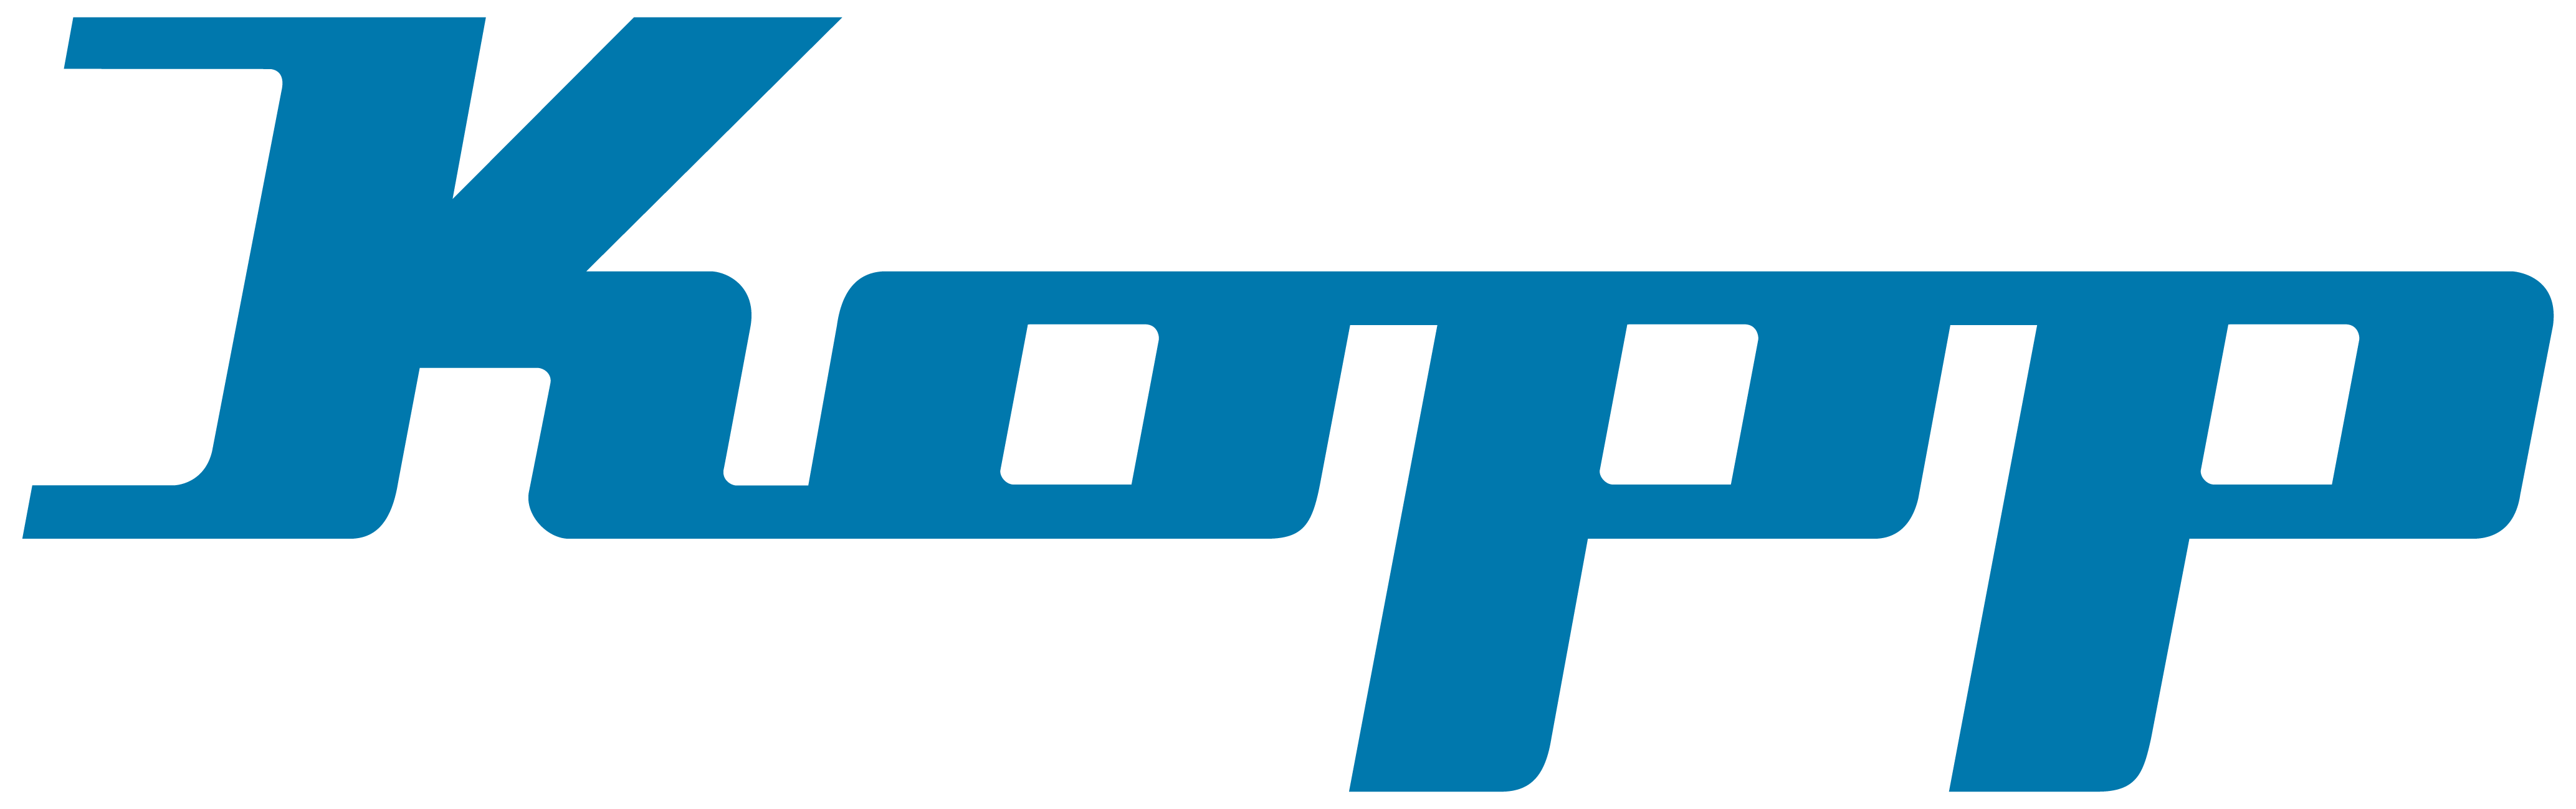 Kopp-Logo